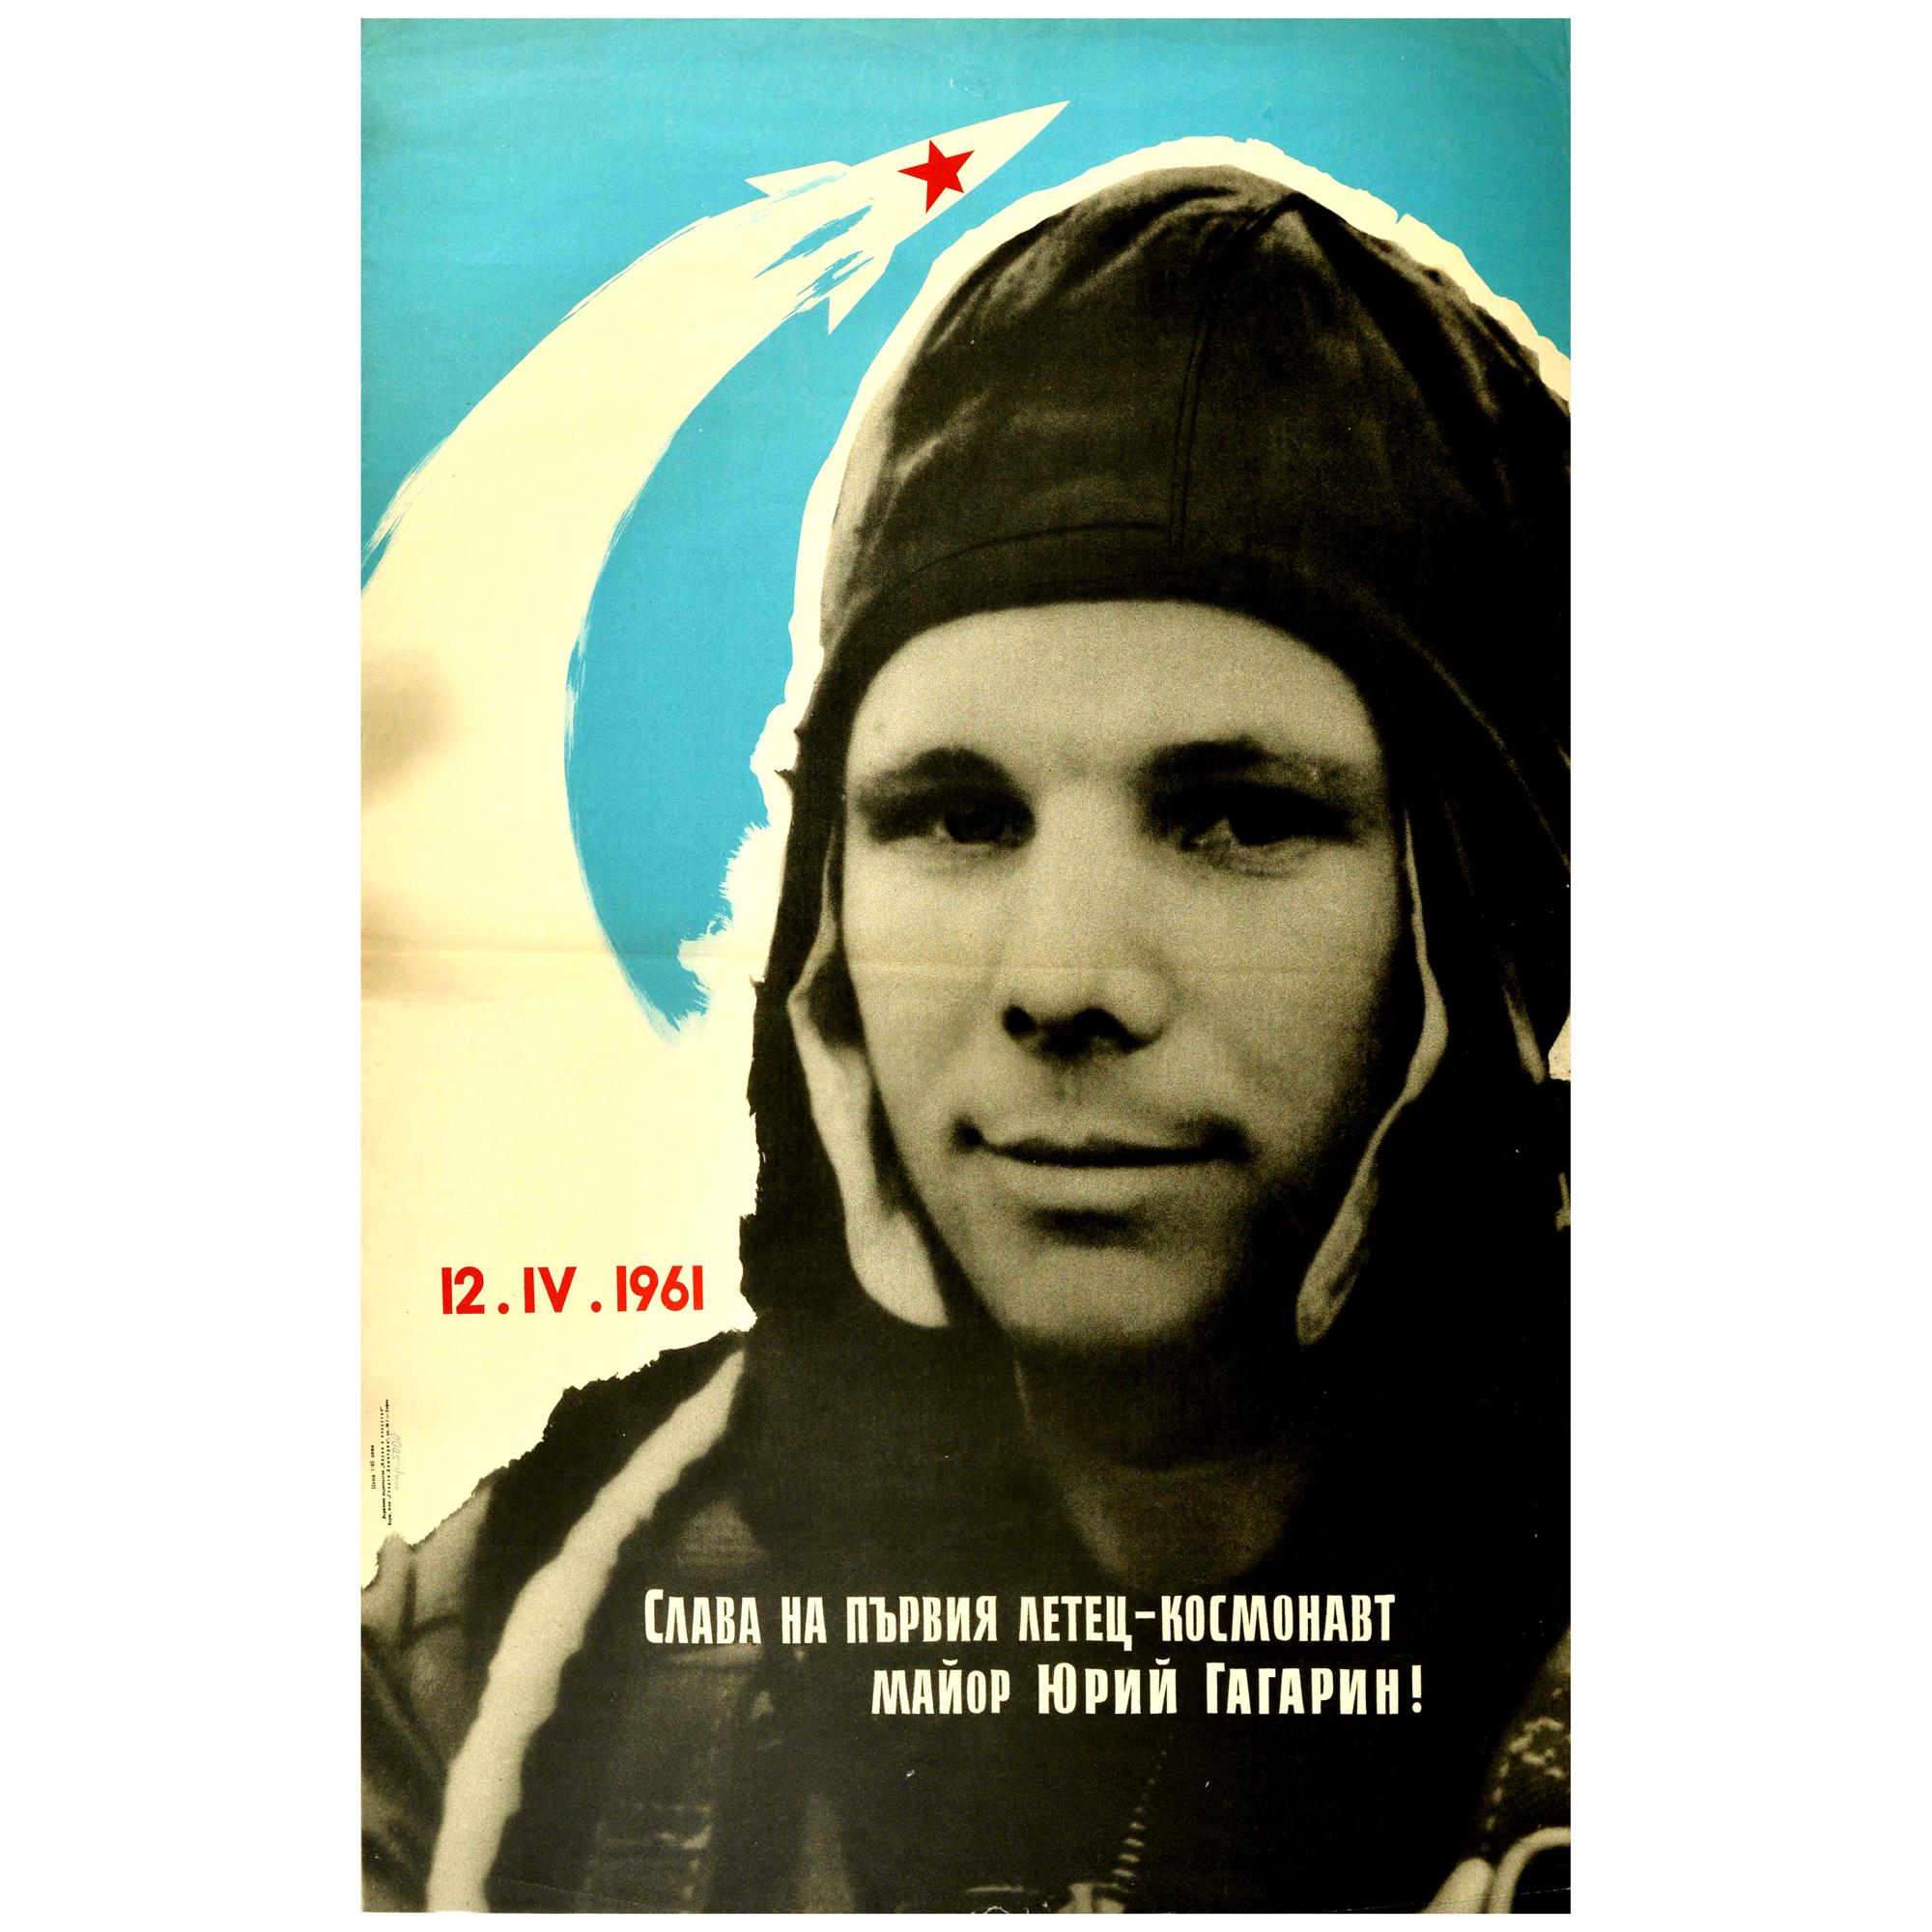 Original Vintage Poster Ehre für den ersten Kosmonauten Pilot Major Yuri Gagarin